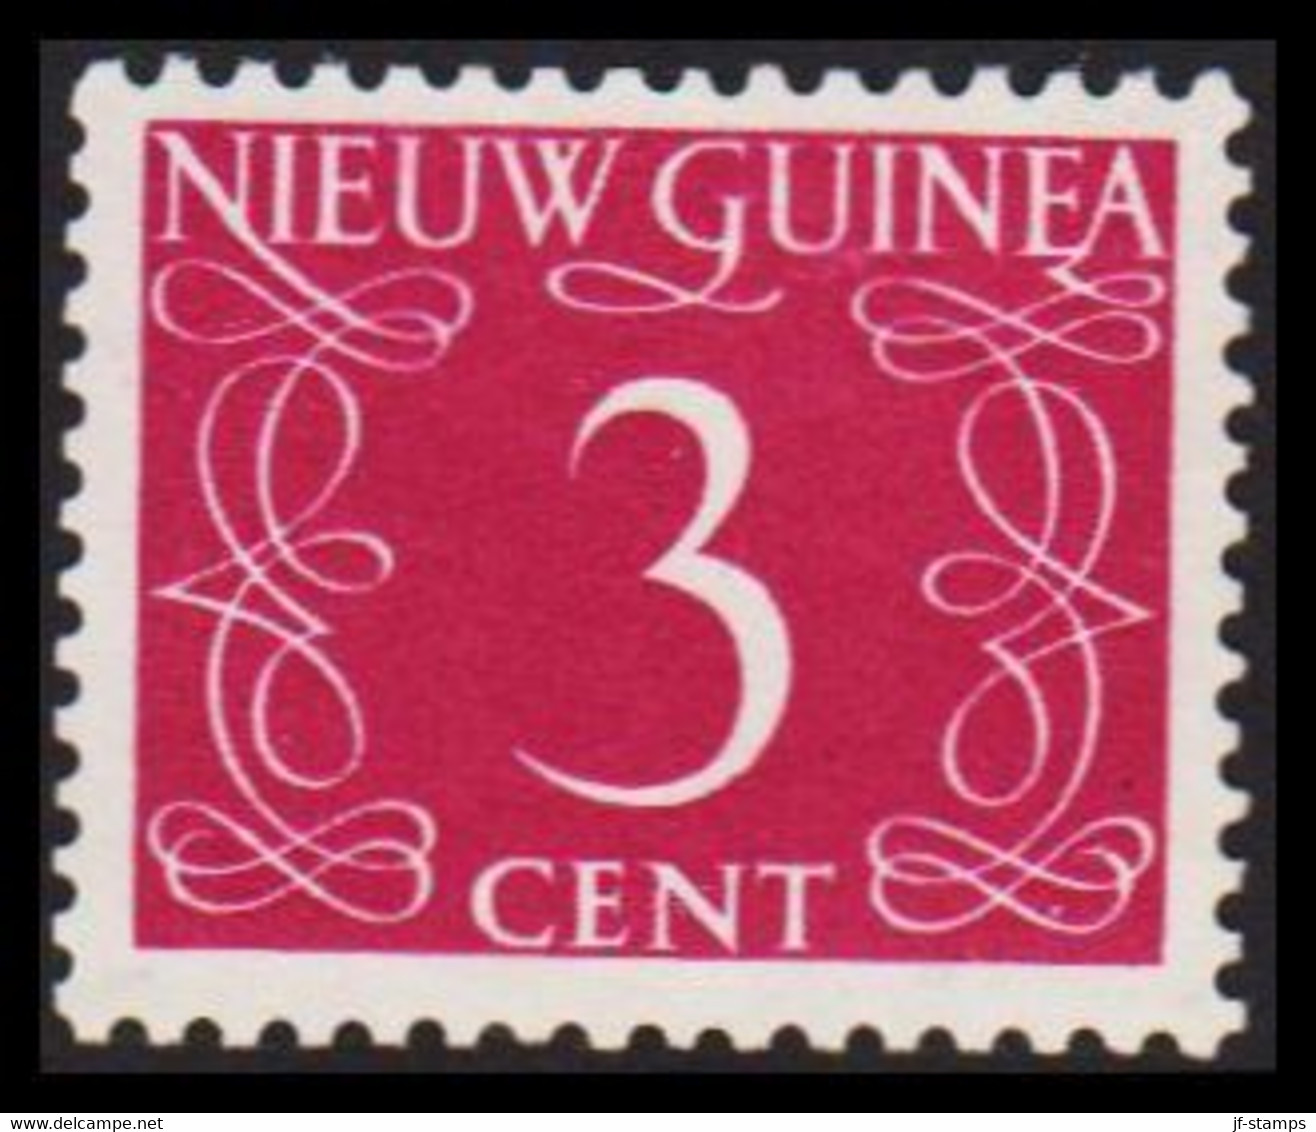 1950. NIEUW GUINEA. Nummerals- Type 3 CENT Hinged.  - JF529321 - Niederländisch-Neuguinea